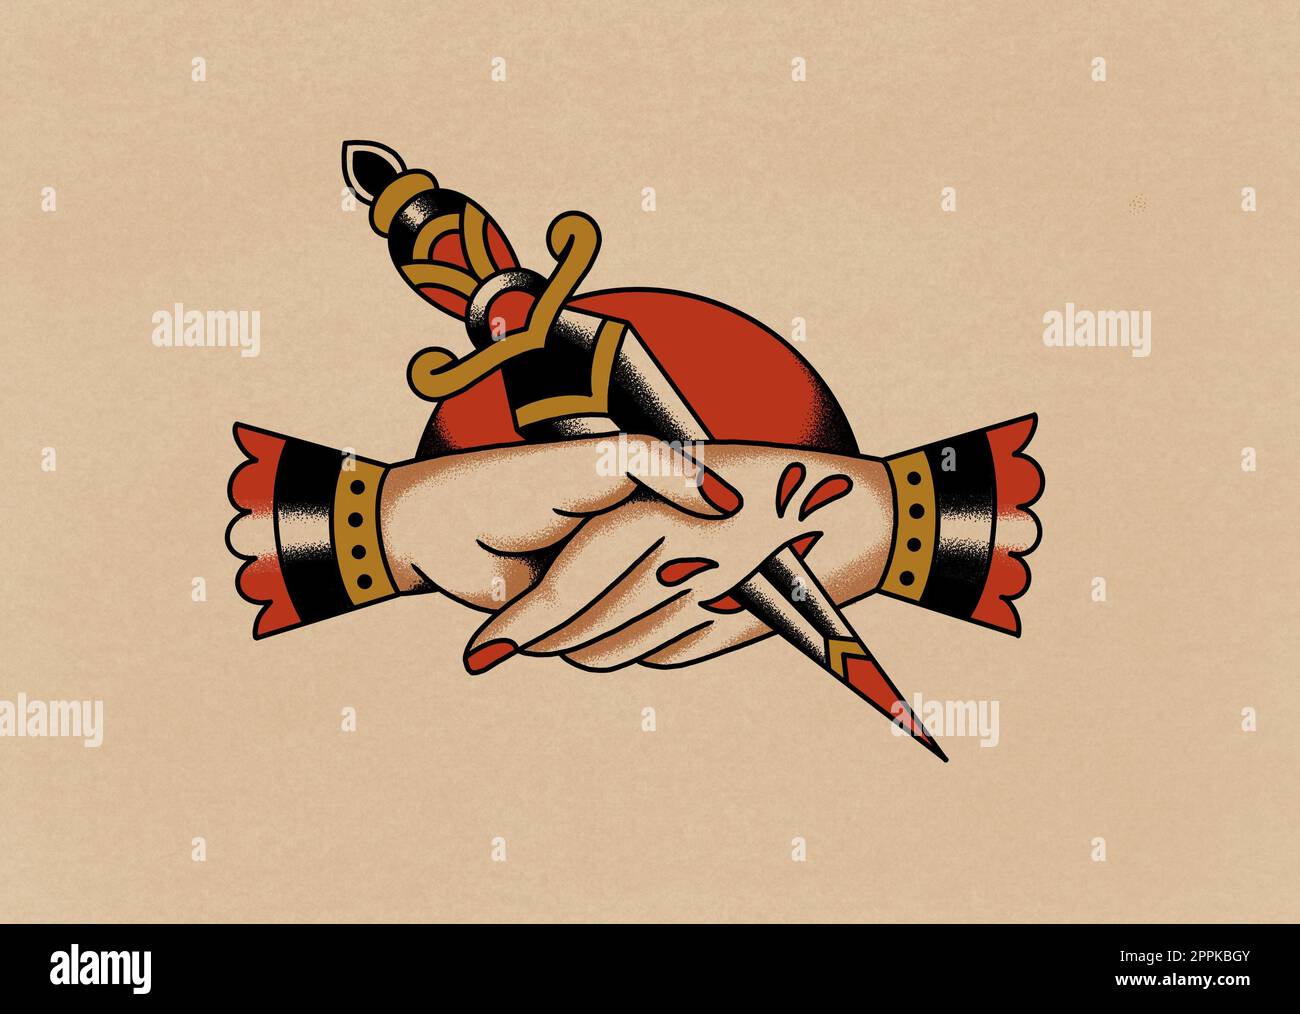 Altmodischer Handschlag mit Tattoo-Kunstzeichnung und mit einem Schwerterstich versehener Hand auf altem Papierhintergrund Stockfoto